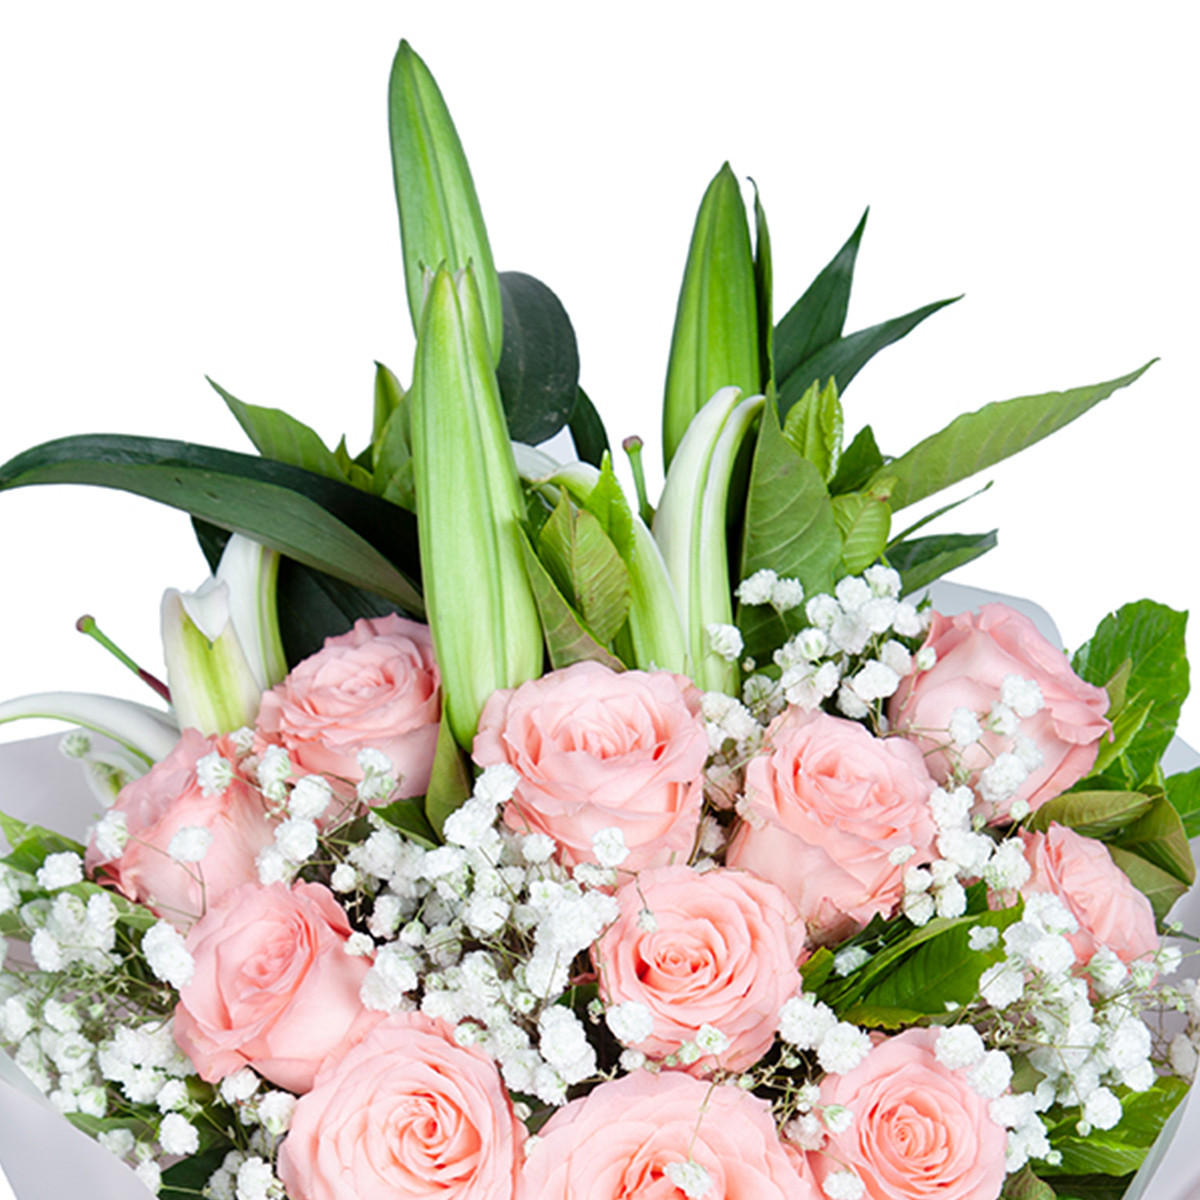 「为爱相随」11枝戴安娜粉玫瑰花搭配百合花束礼物女友爱人生日纪念日